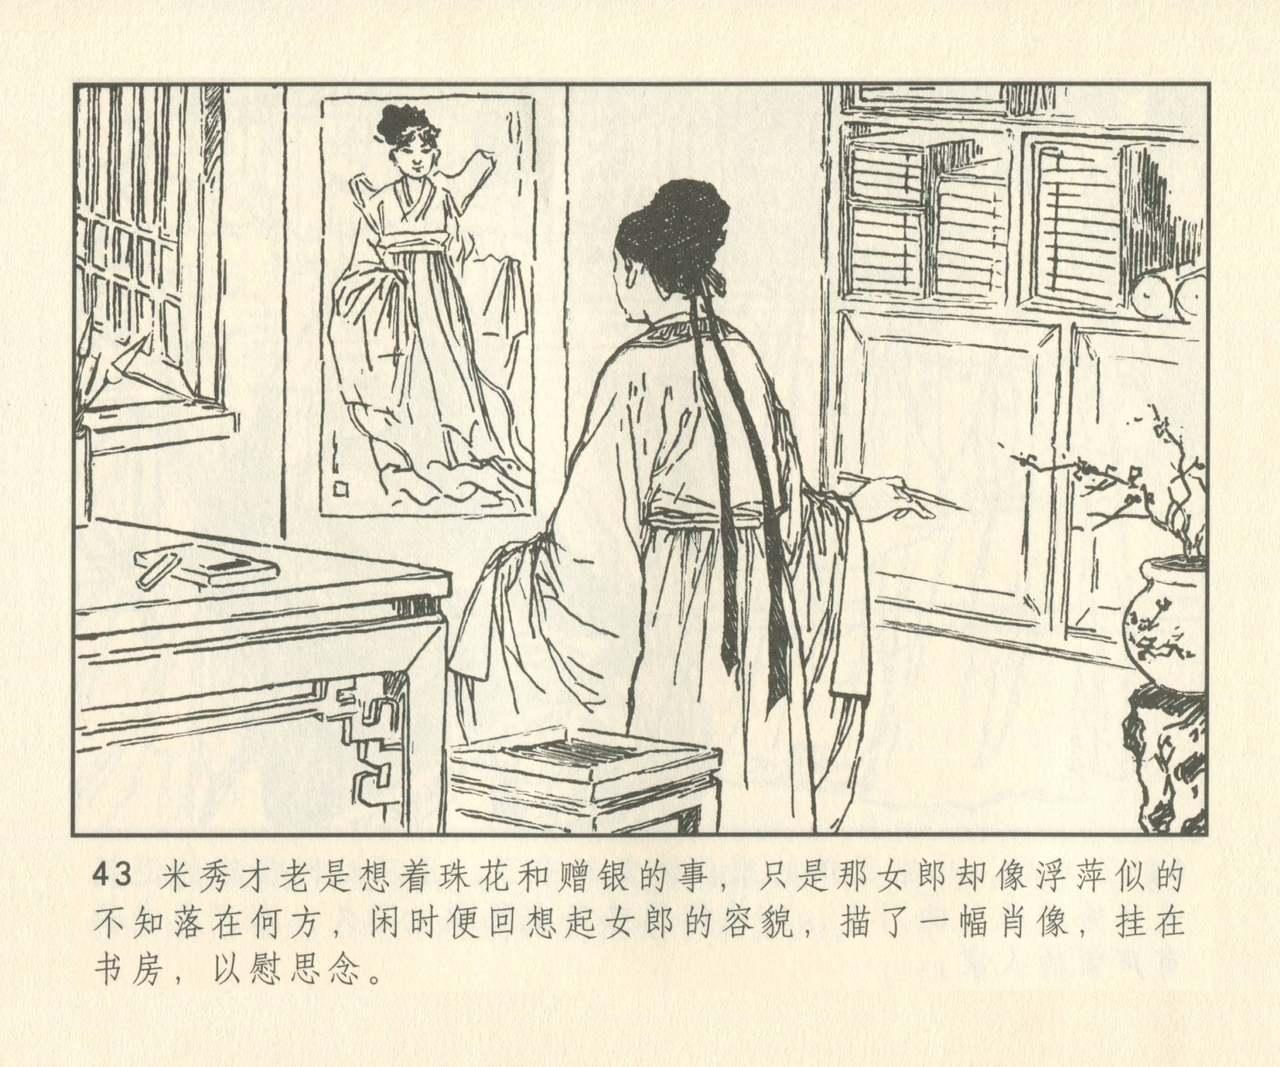 聊斋志异 张玮等绘 天津人民美术出版社 卷二十一 ~ 三十 171